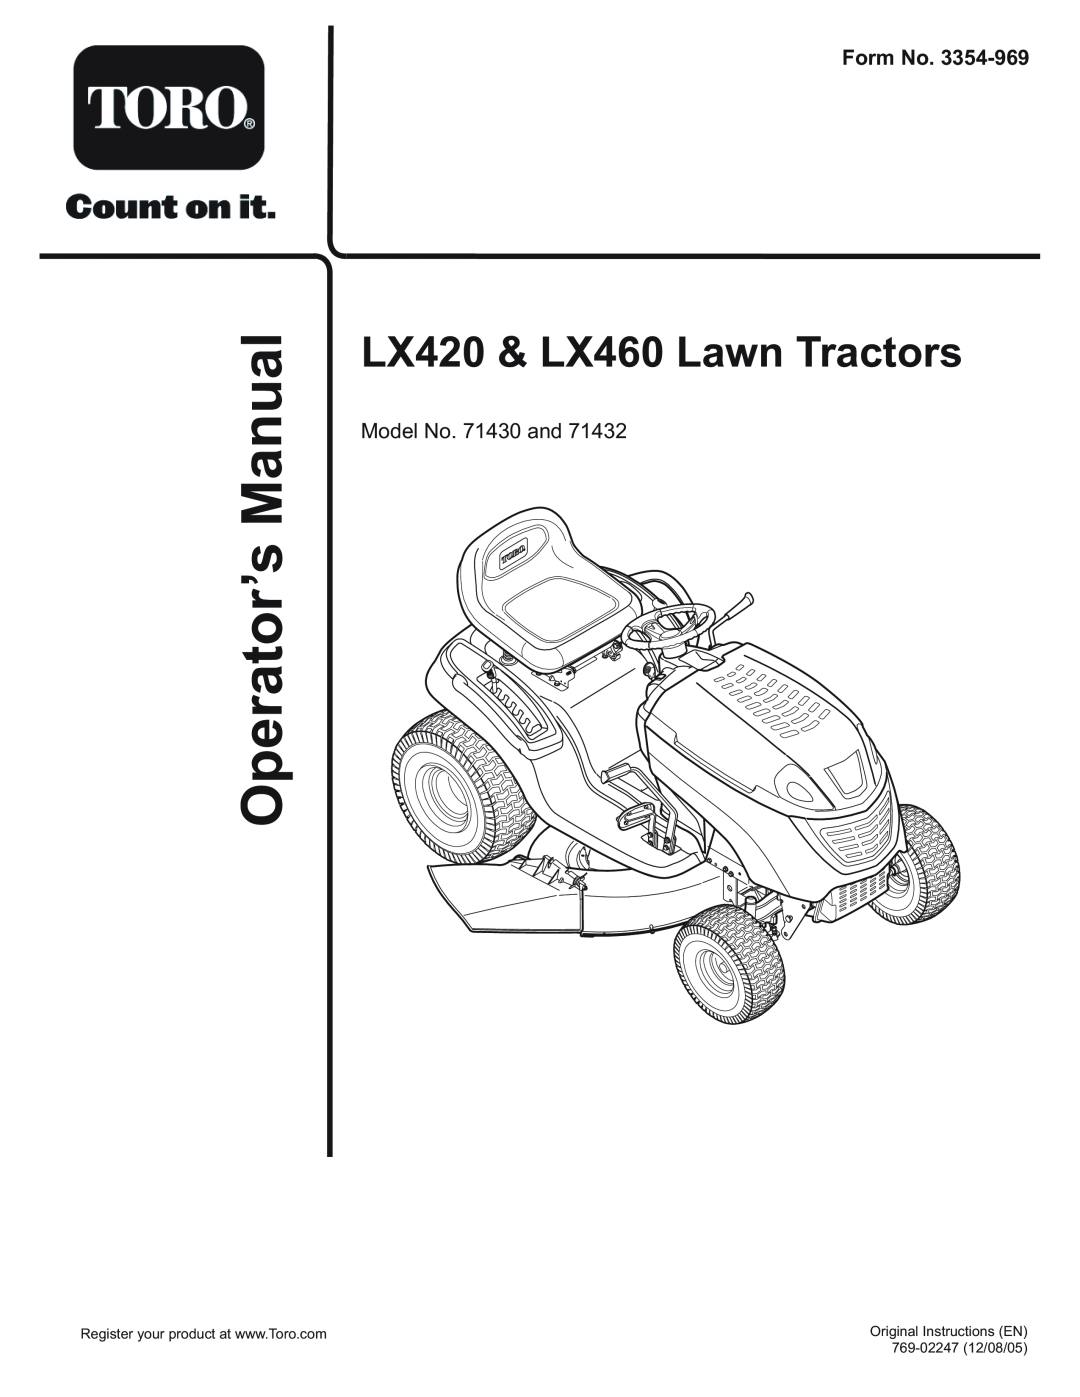 Toro 71430, 71432 manual LX420 & LX460 Lawn Tractors, ManualOperator’s, Form No, Model No. 71430 and, 769-0224712/08/05 